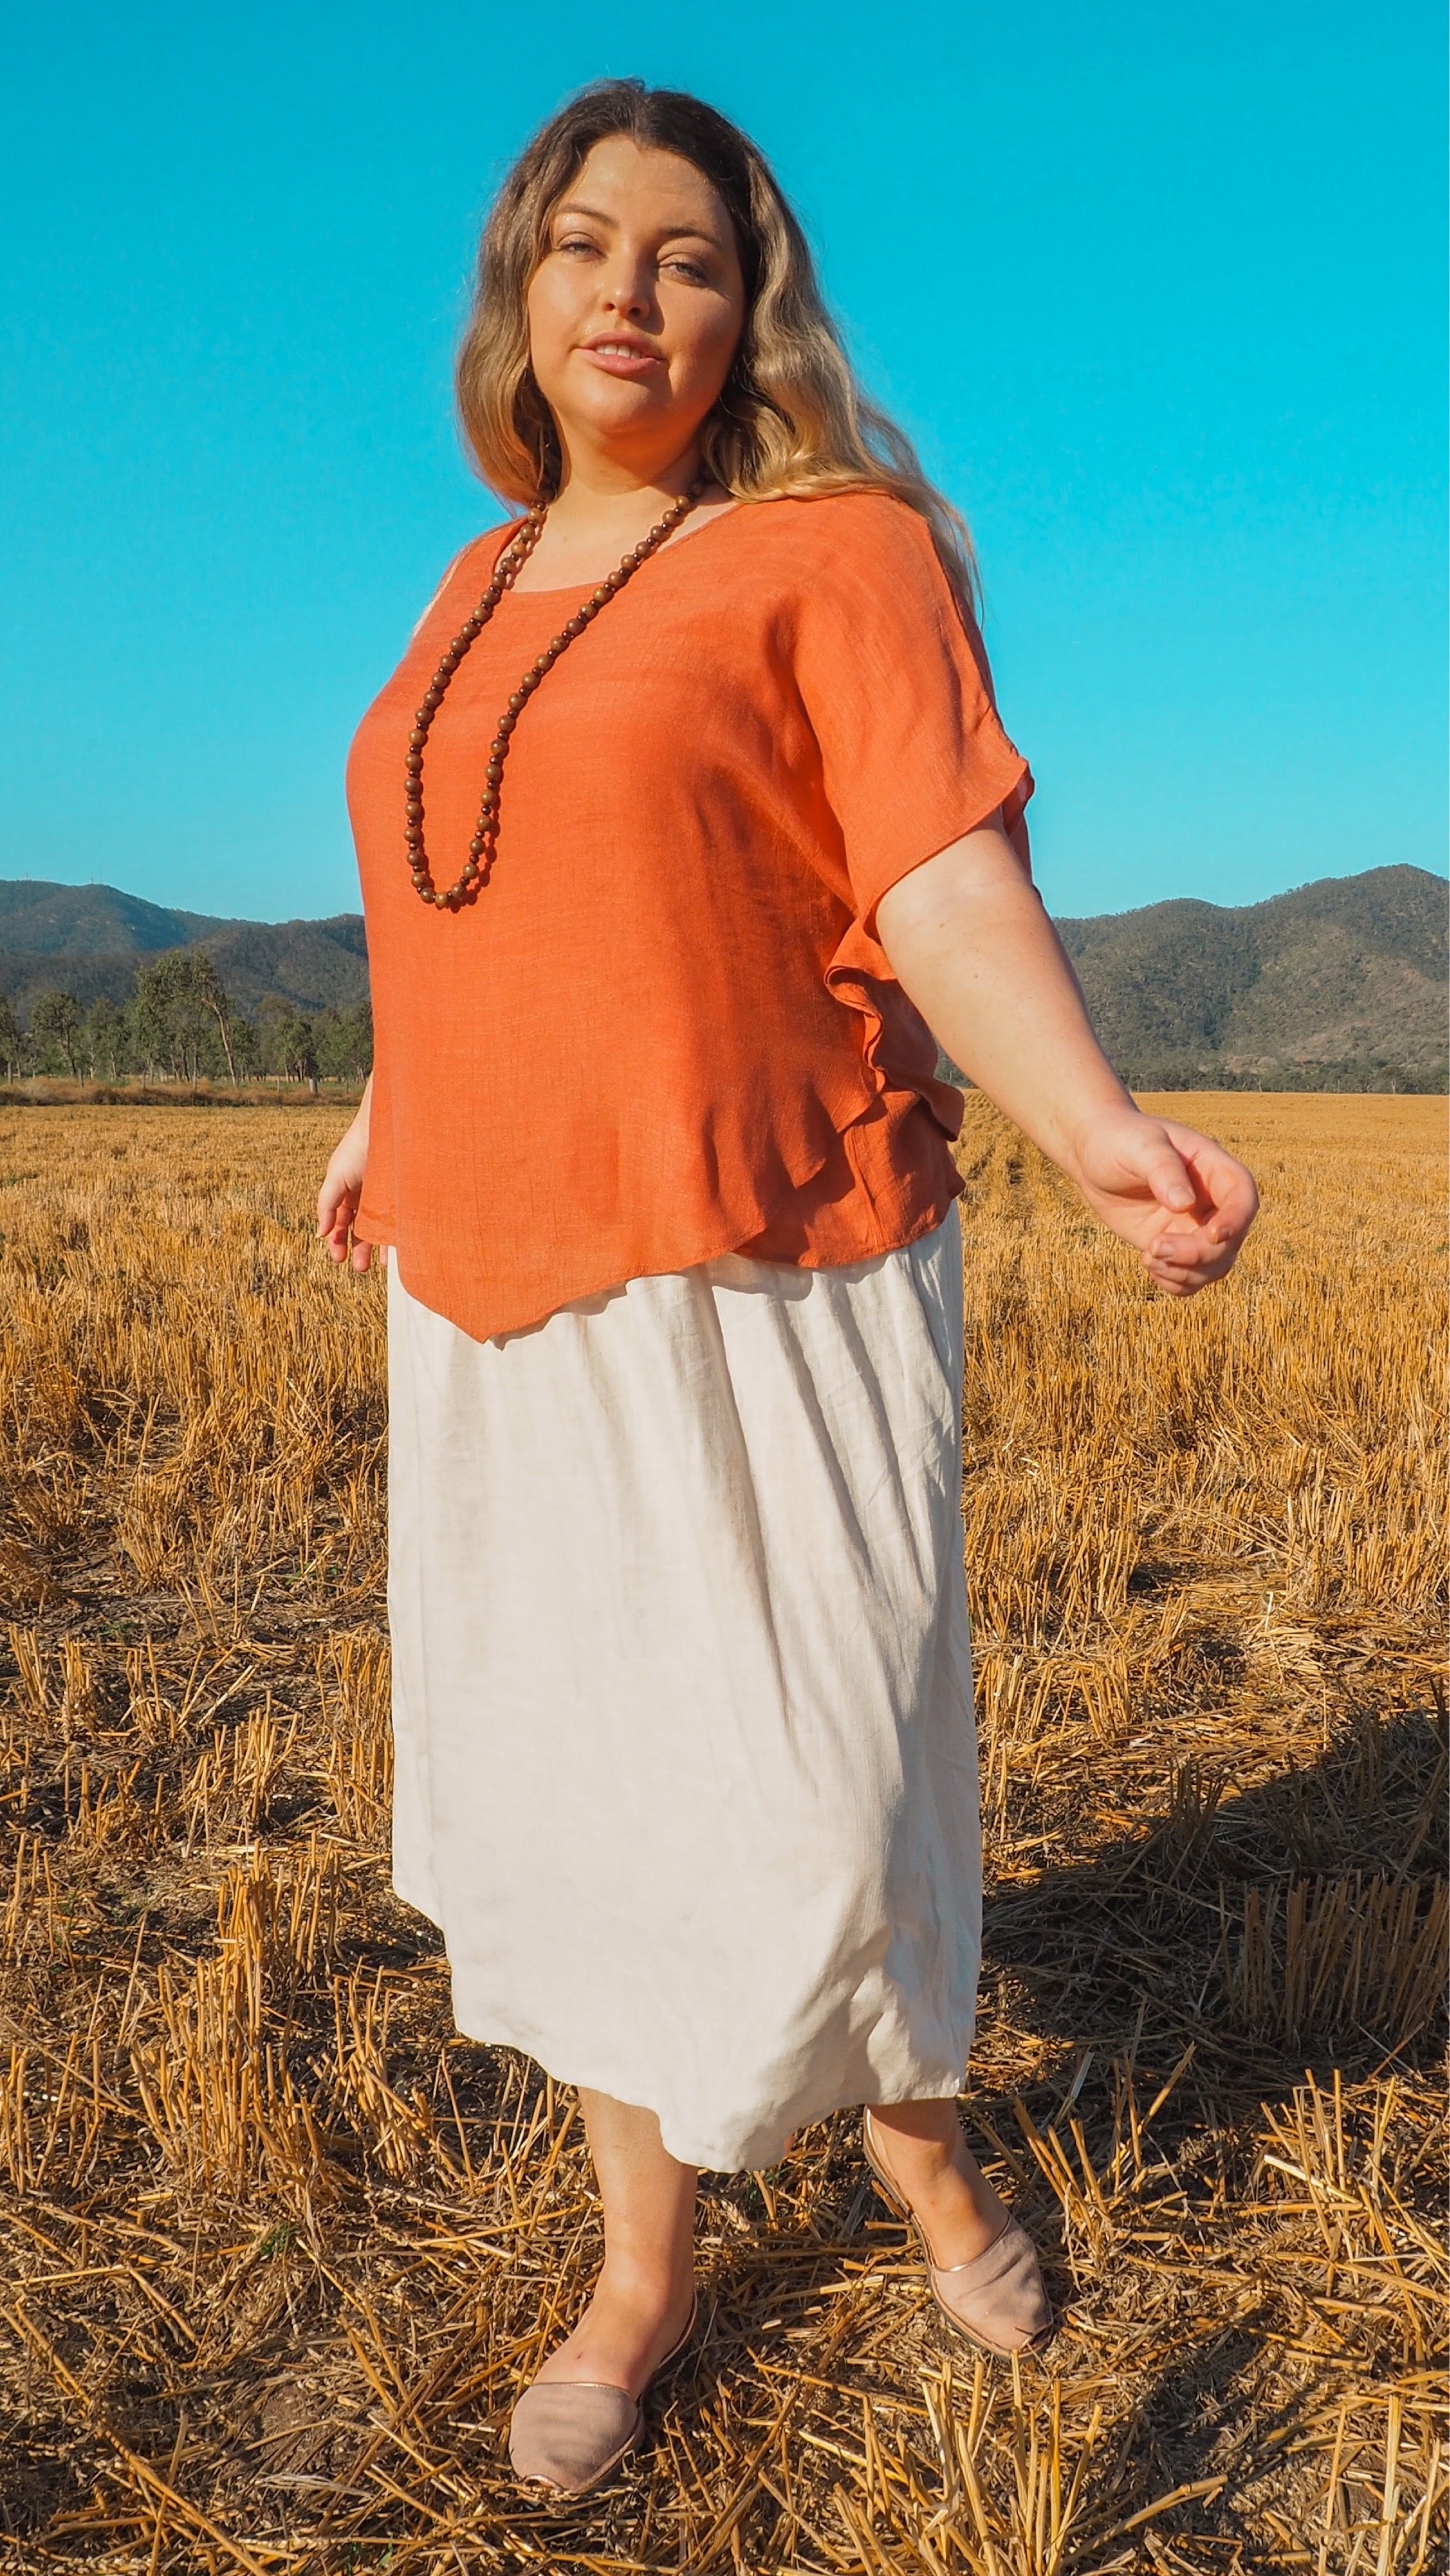 NEW Linen Skirt/Dress in Sand freeshipping - White Amber the Label